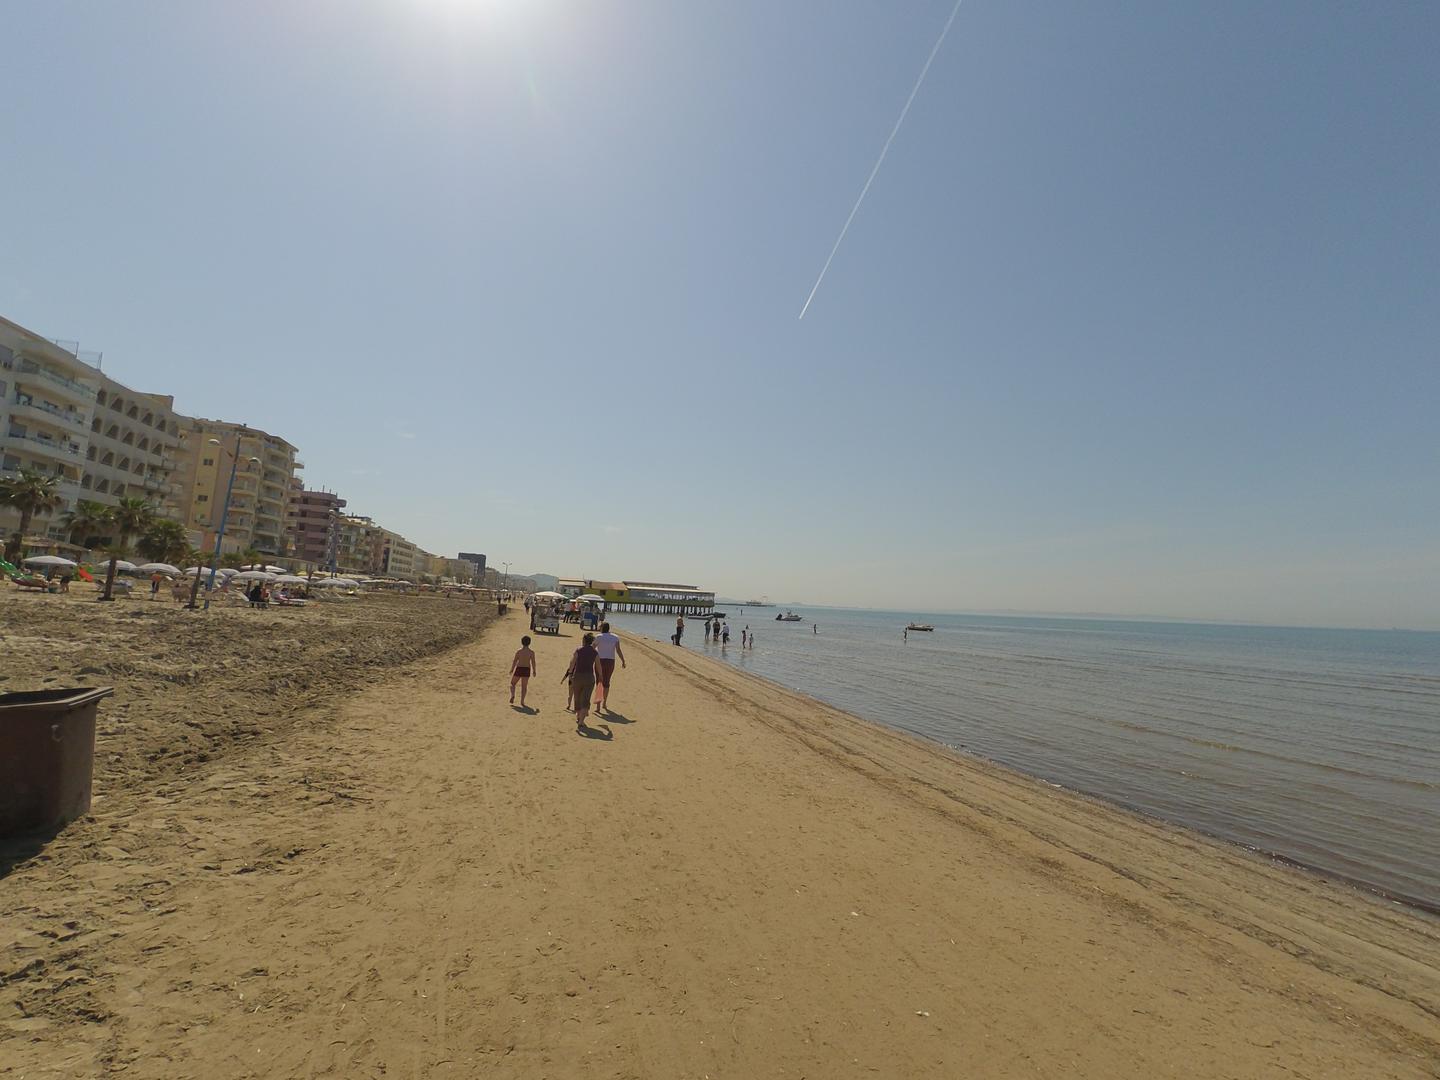 Plažu u Draču u vrijeme našeg dolaska pripremali su za novu sezonu. Kažu da se u srpnju i kolovozu ne može prošetati od ležaljki i ručnika